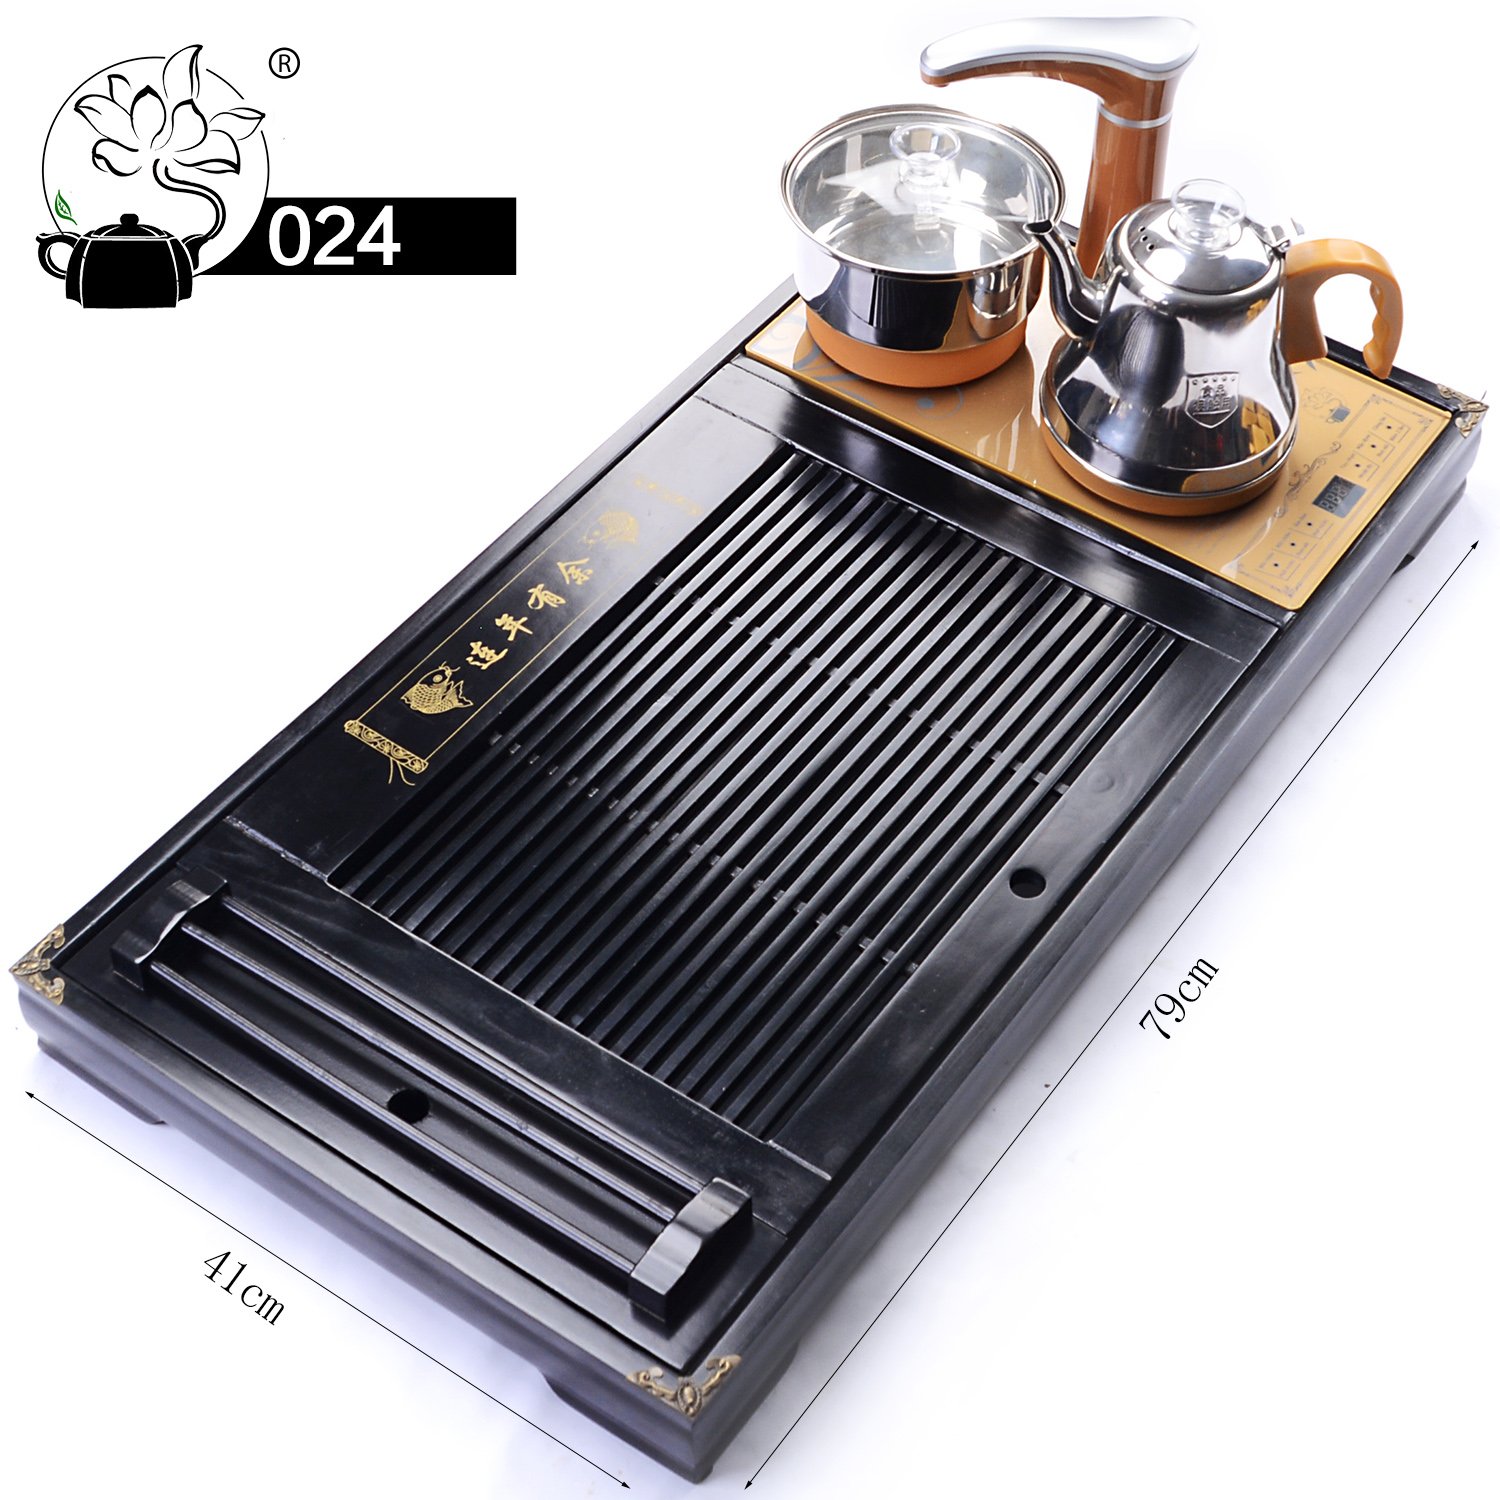 Bộ bàn trà bao gồm: Khay trà 024+ Bộ bếp điện tự động hút nước, đun sôi D05